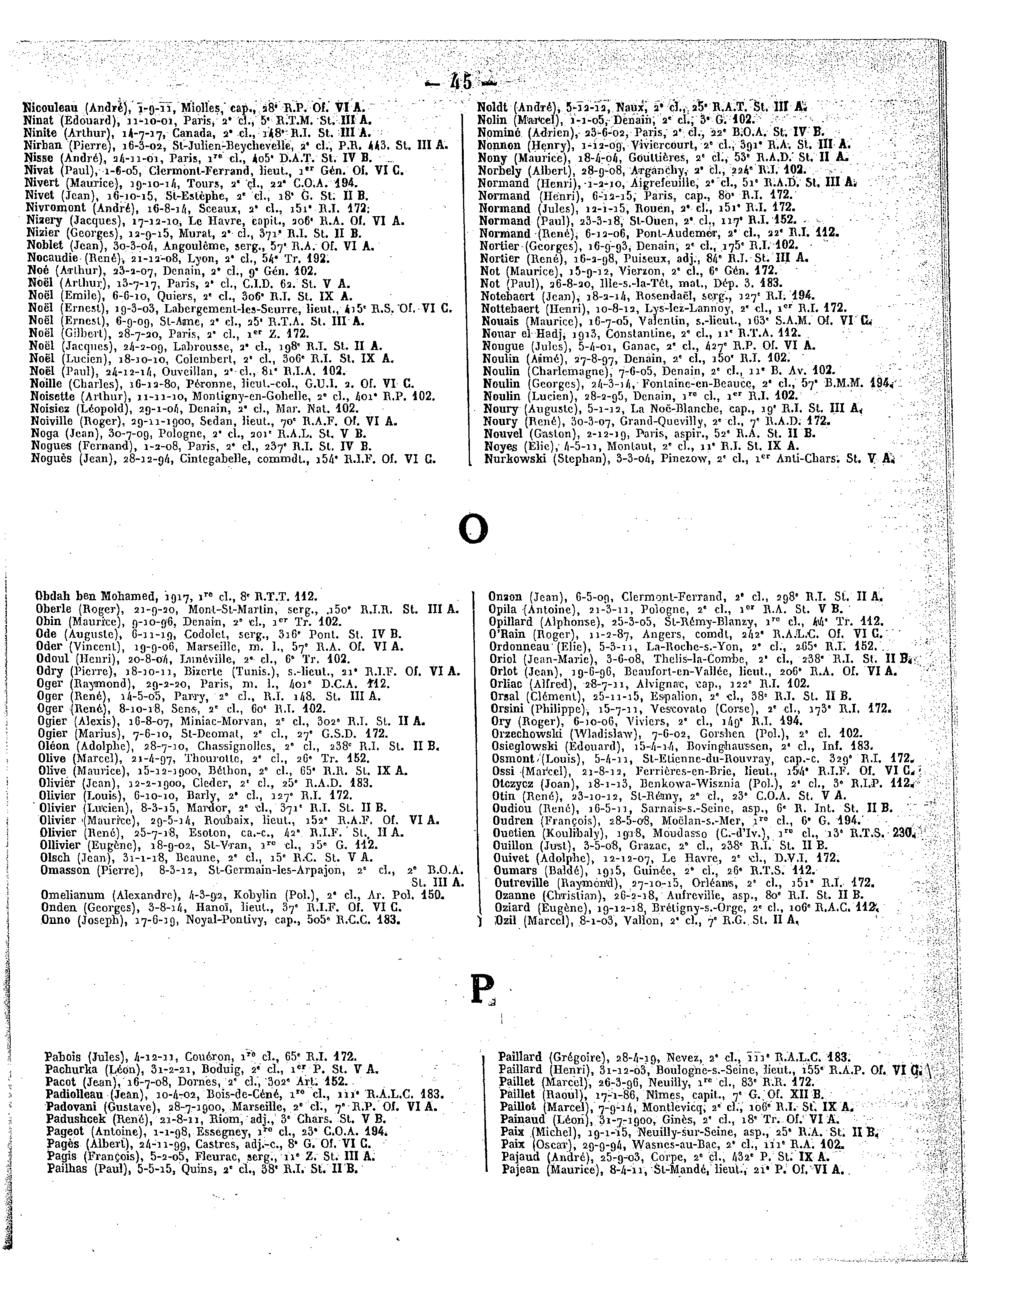 M Kicouleau (André), "irg-ii,miolïes," cap.,â8*r.pọf.'via. Ninat(Edouard), n-io-oi,paris,a' cl.,5'r;t.m.st.ill A. Ninite(Arthur),14-7-17, Canada, a"cl.,i48 R.I.St. IIIA.